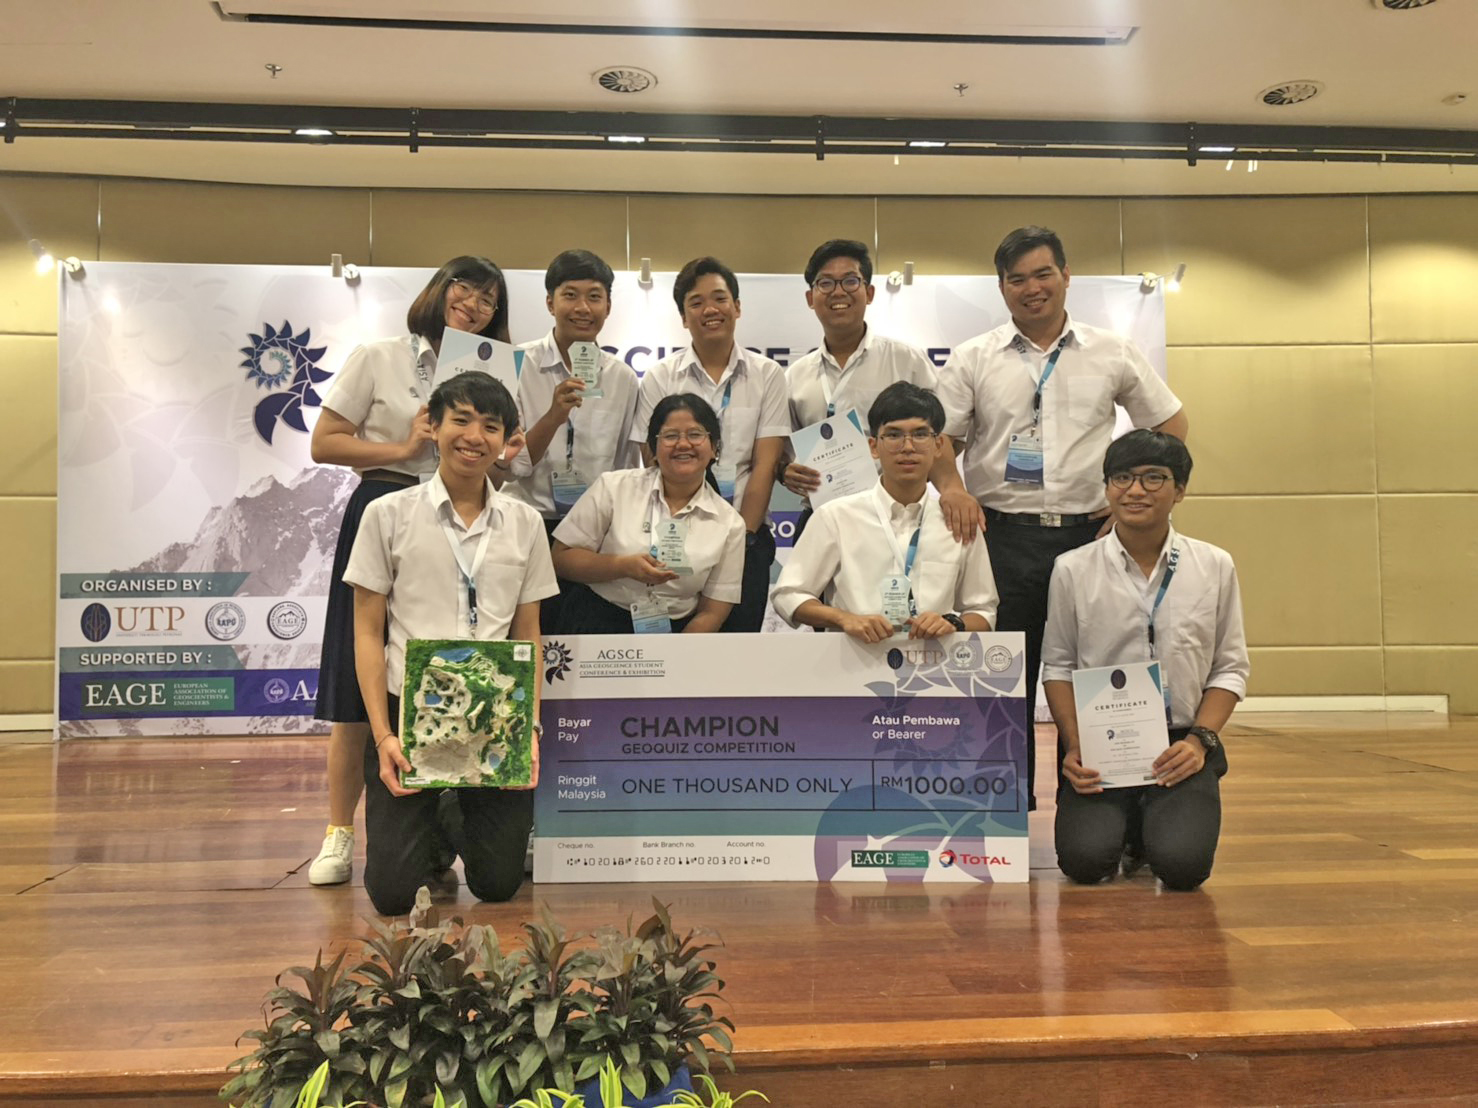 ทีมนิสิตจากภาควิชาธรณีวิทยาชนะการแข่งขันตอบปัญหาธรณีวิทยา ในงาน Asia Geoscience Student Conference & Exhibition (AGSCE) 